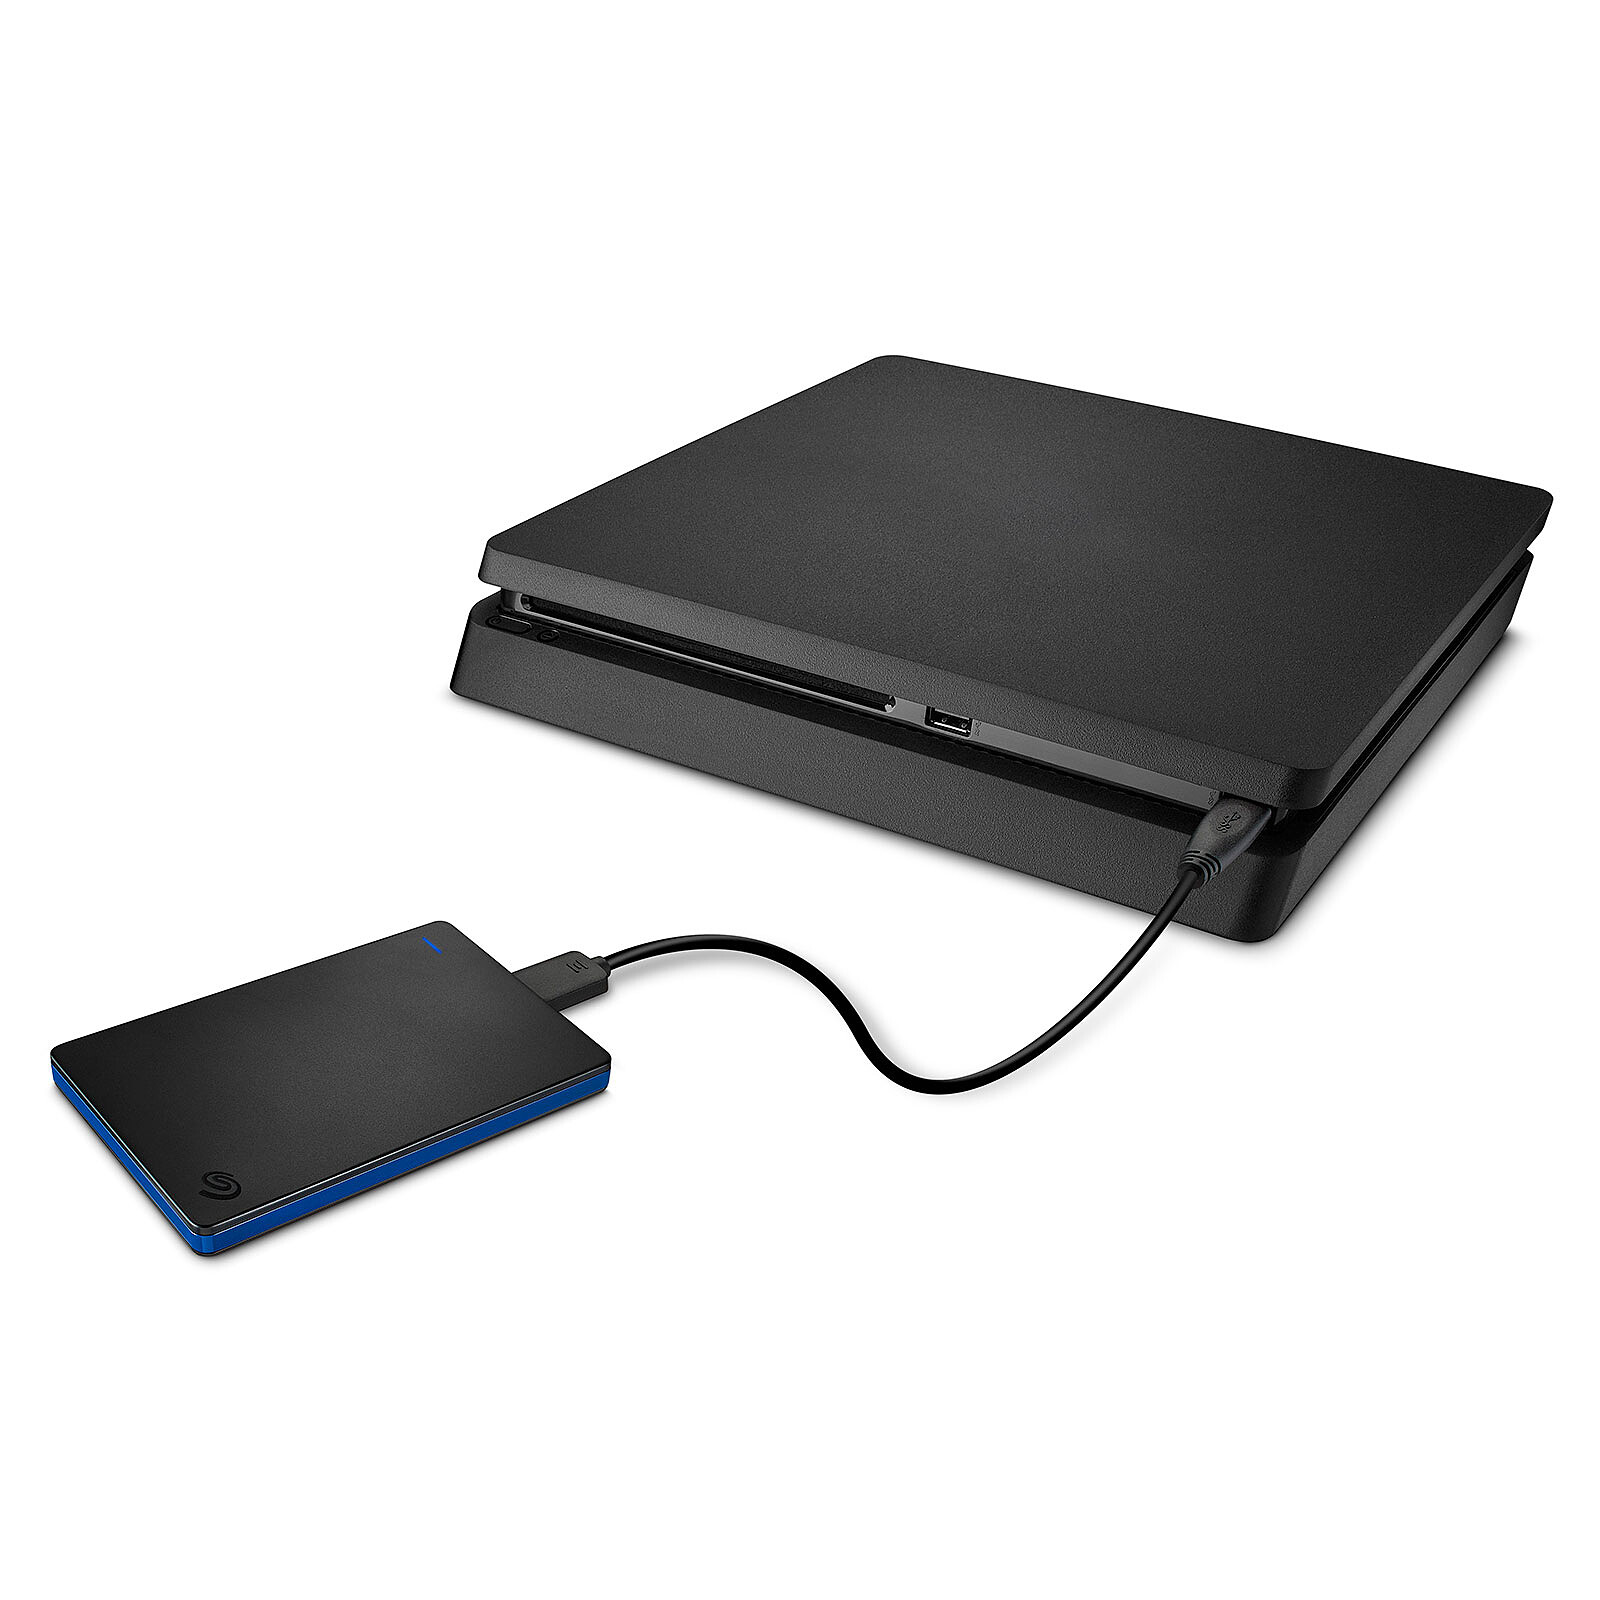 Seagate Game Drive 2 To Noir et bleu - Accessoires PS4 - Garantie